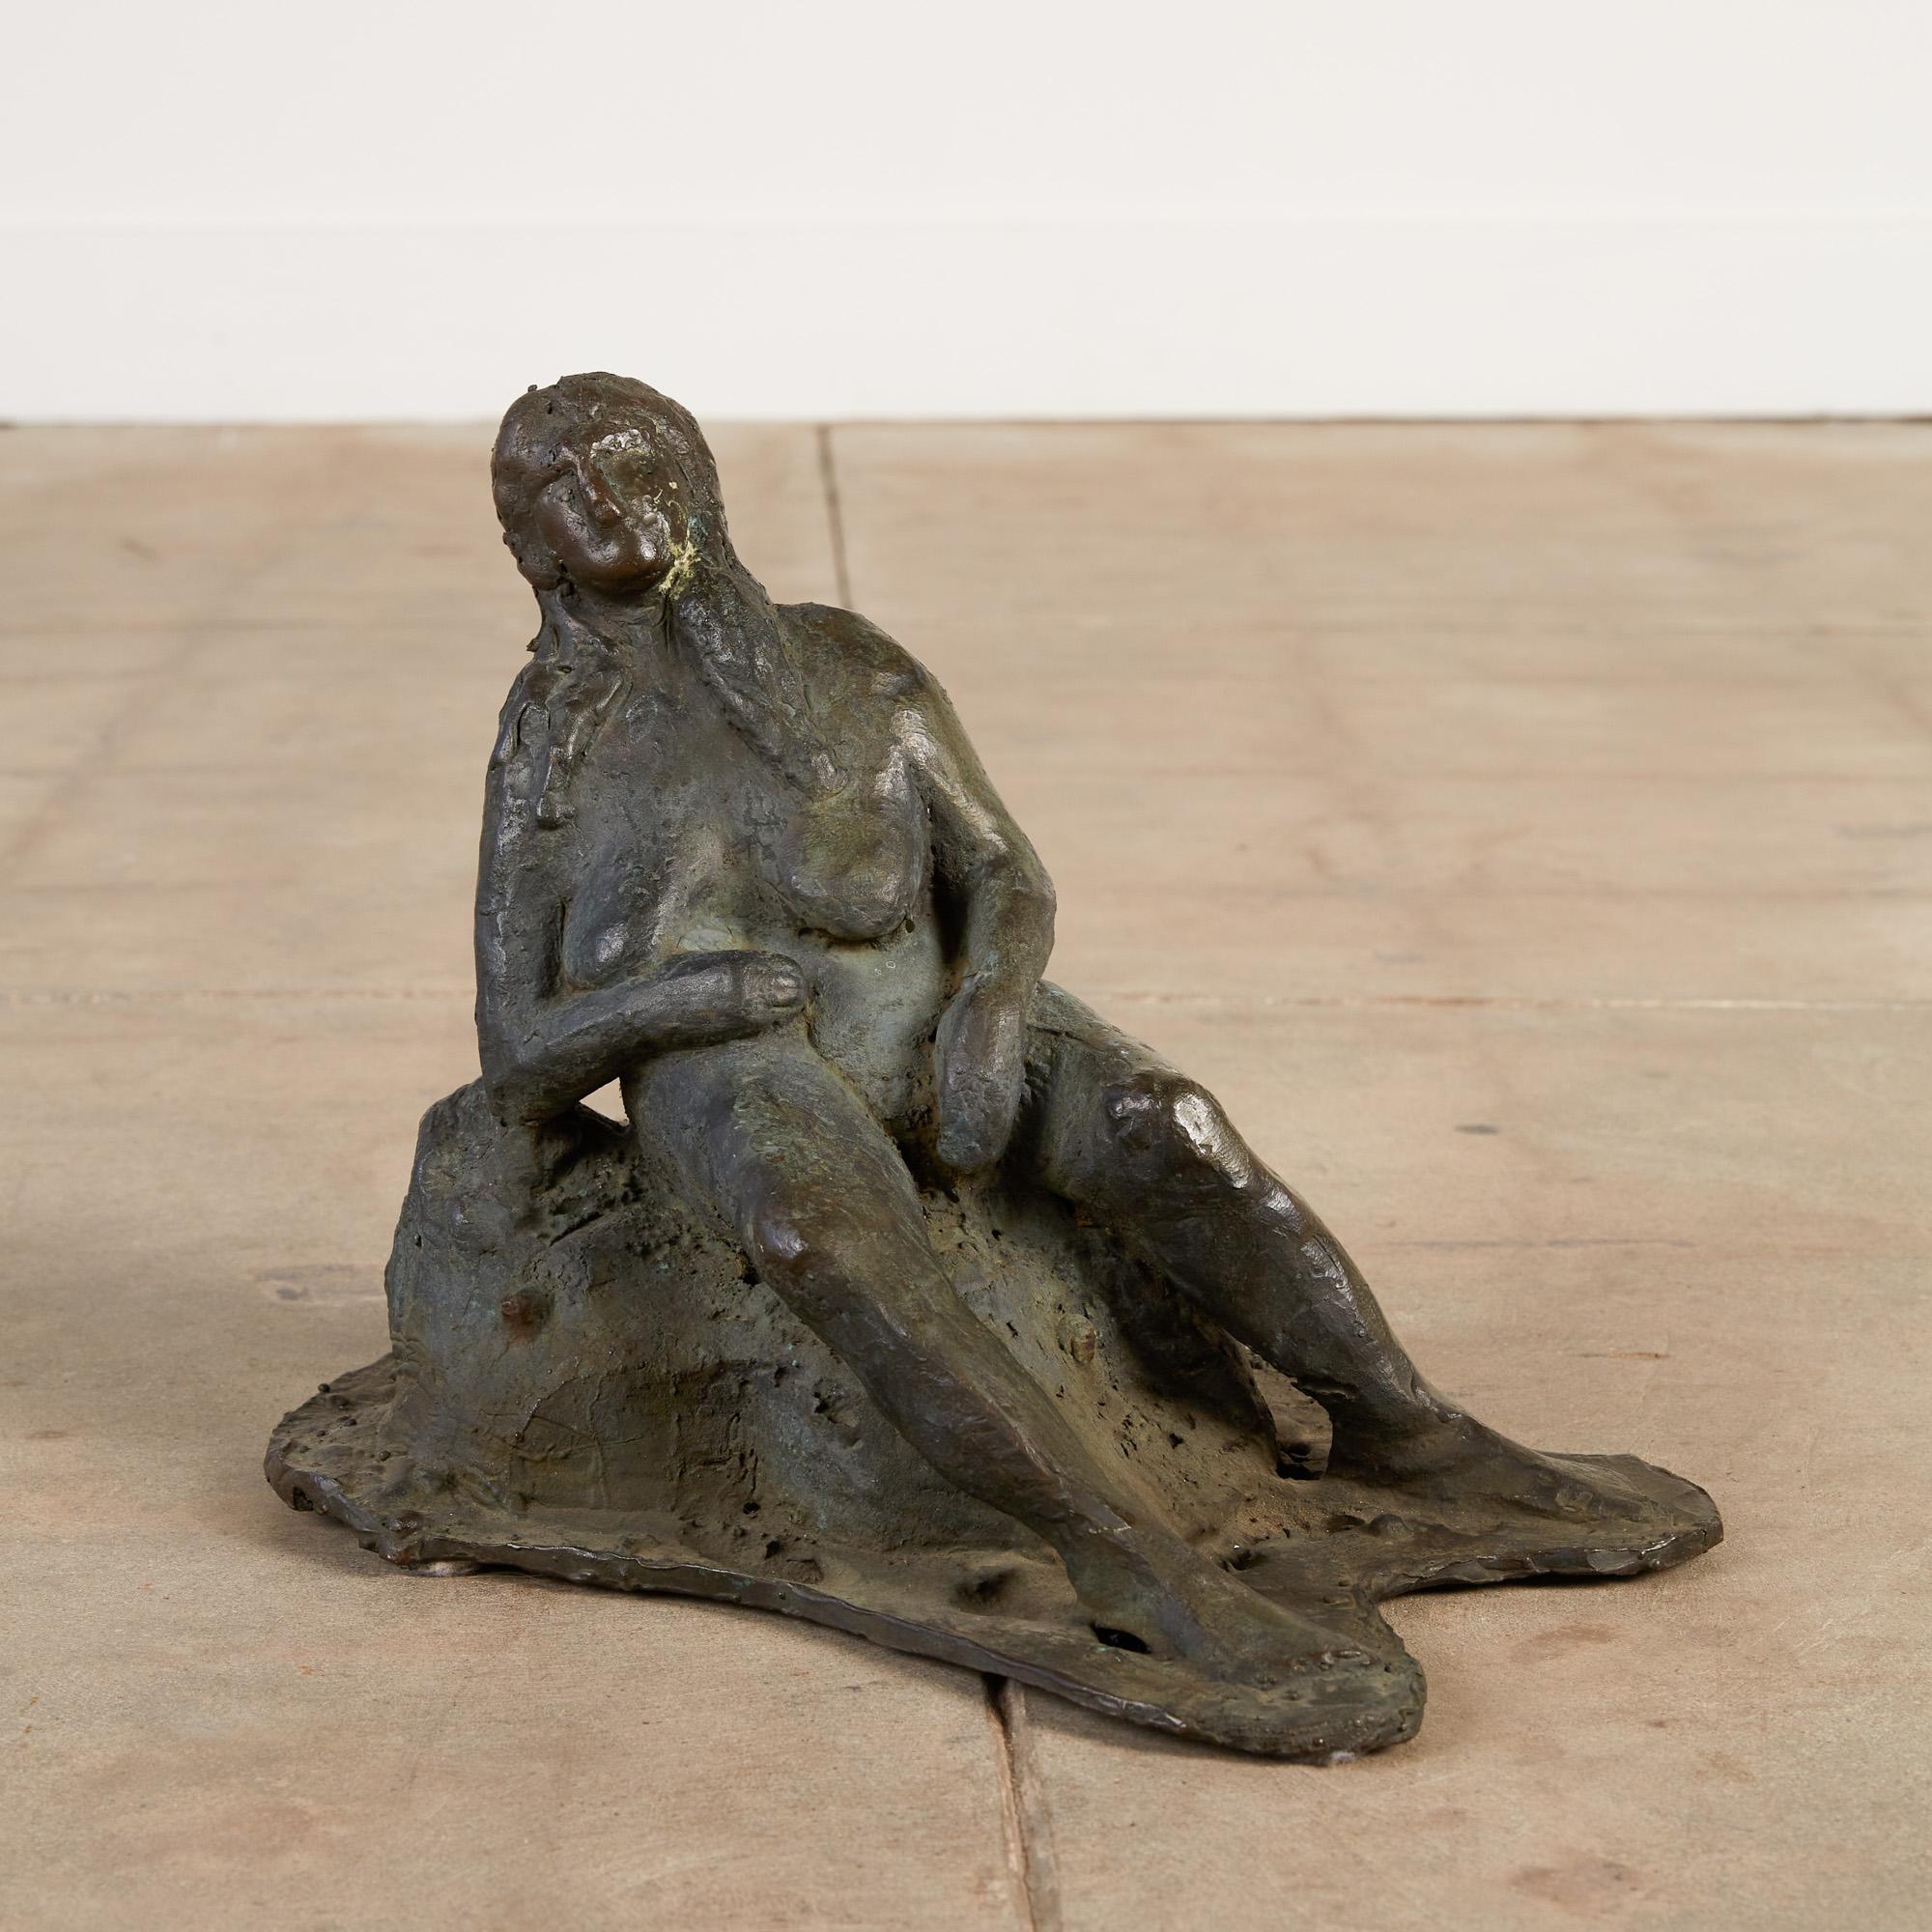 Cette sculpture en bronze coulé représente une femme, capturée dans un moment où elle vient de terminer une baignade dans son lac préféré. Elle contemple la vue, allongée sur un rocher, tandis qu'elle sèche suffisamment pour pouvoir se rhabiller et